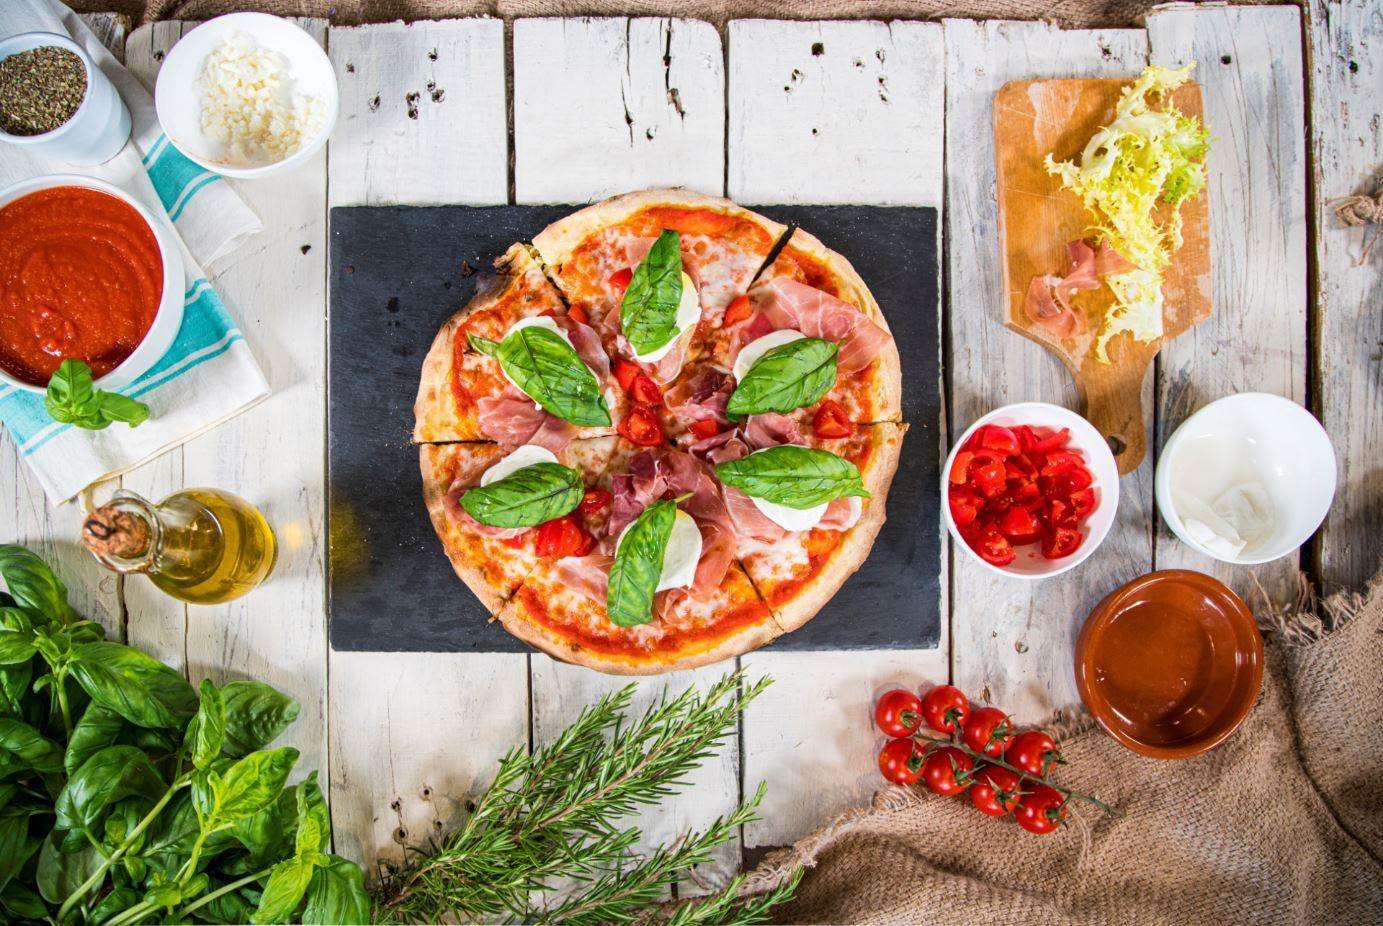 Base Pizza Bis 30cm 250g - 20 Pezzi - I migliori prodotti Made in Italy da Fiera Monza e Brianza SHOP - Solo 39€! Acquista subito su Fiera di Monza Shop!